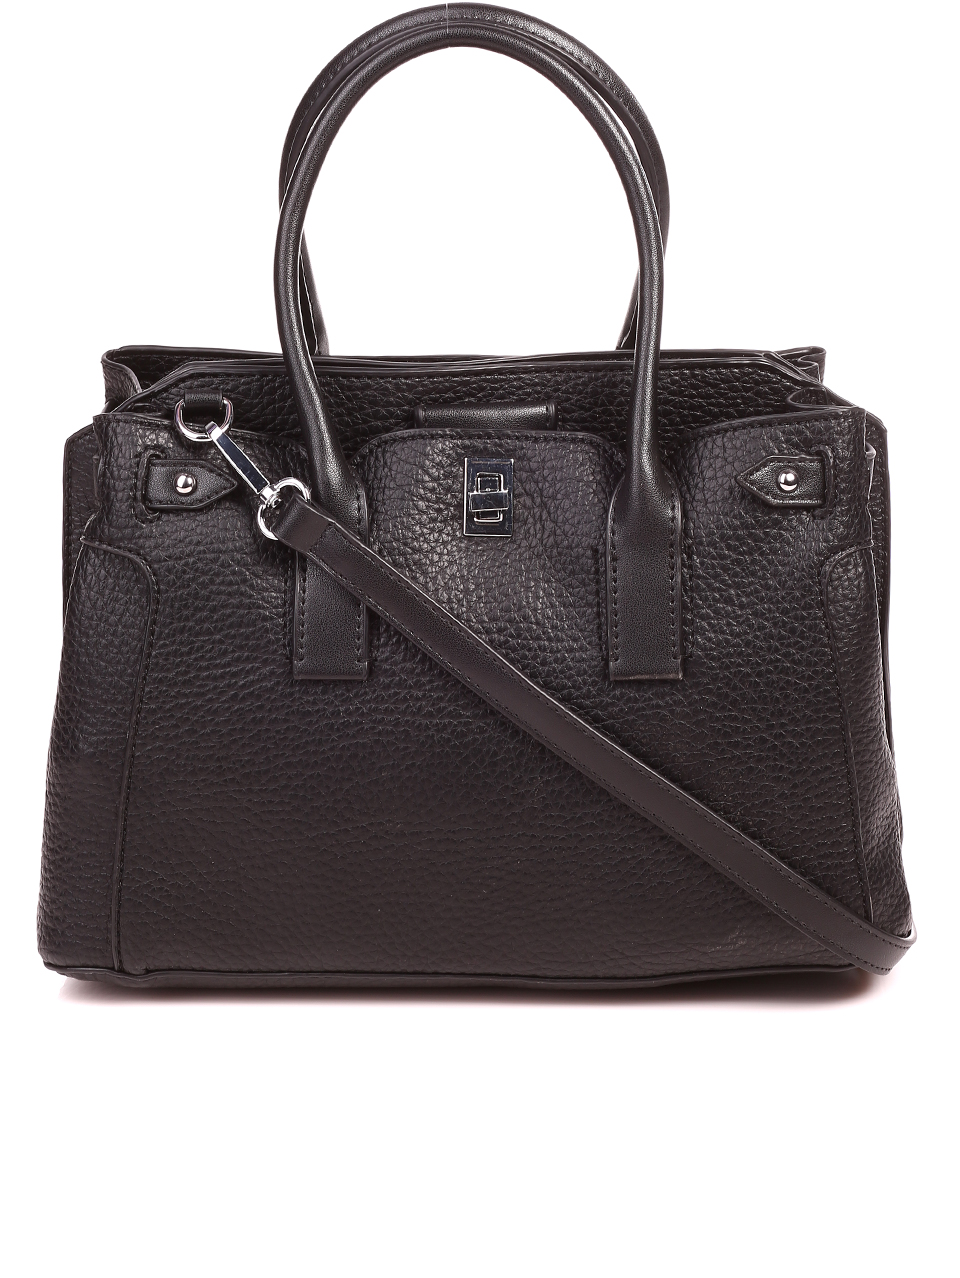 Ежедневна/елегантна дамска чанта в черно 9Q-22076 black